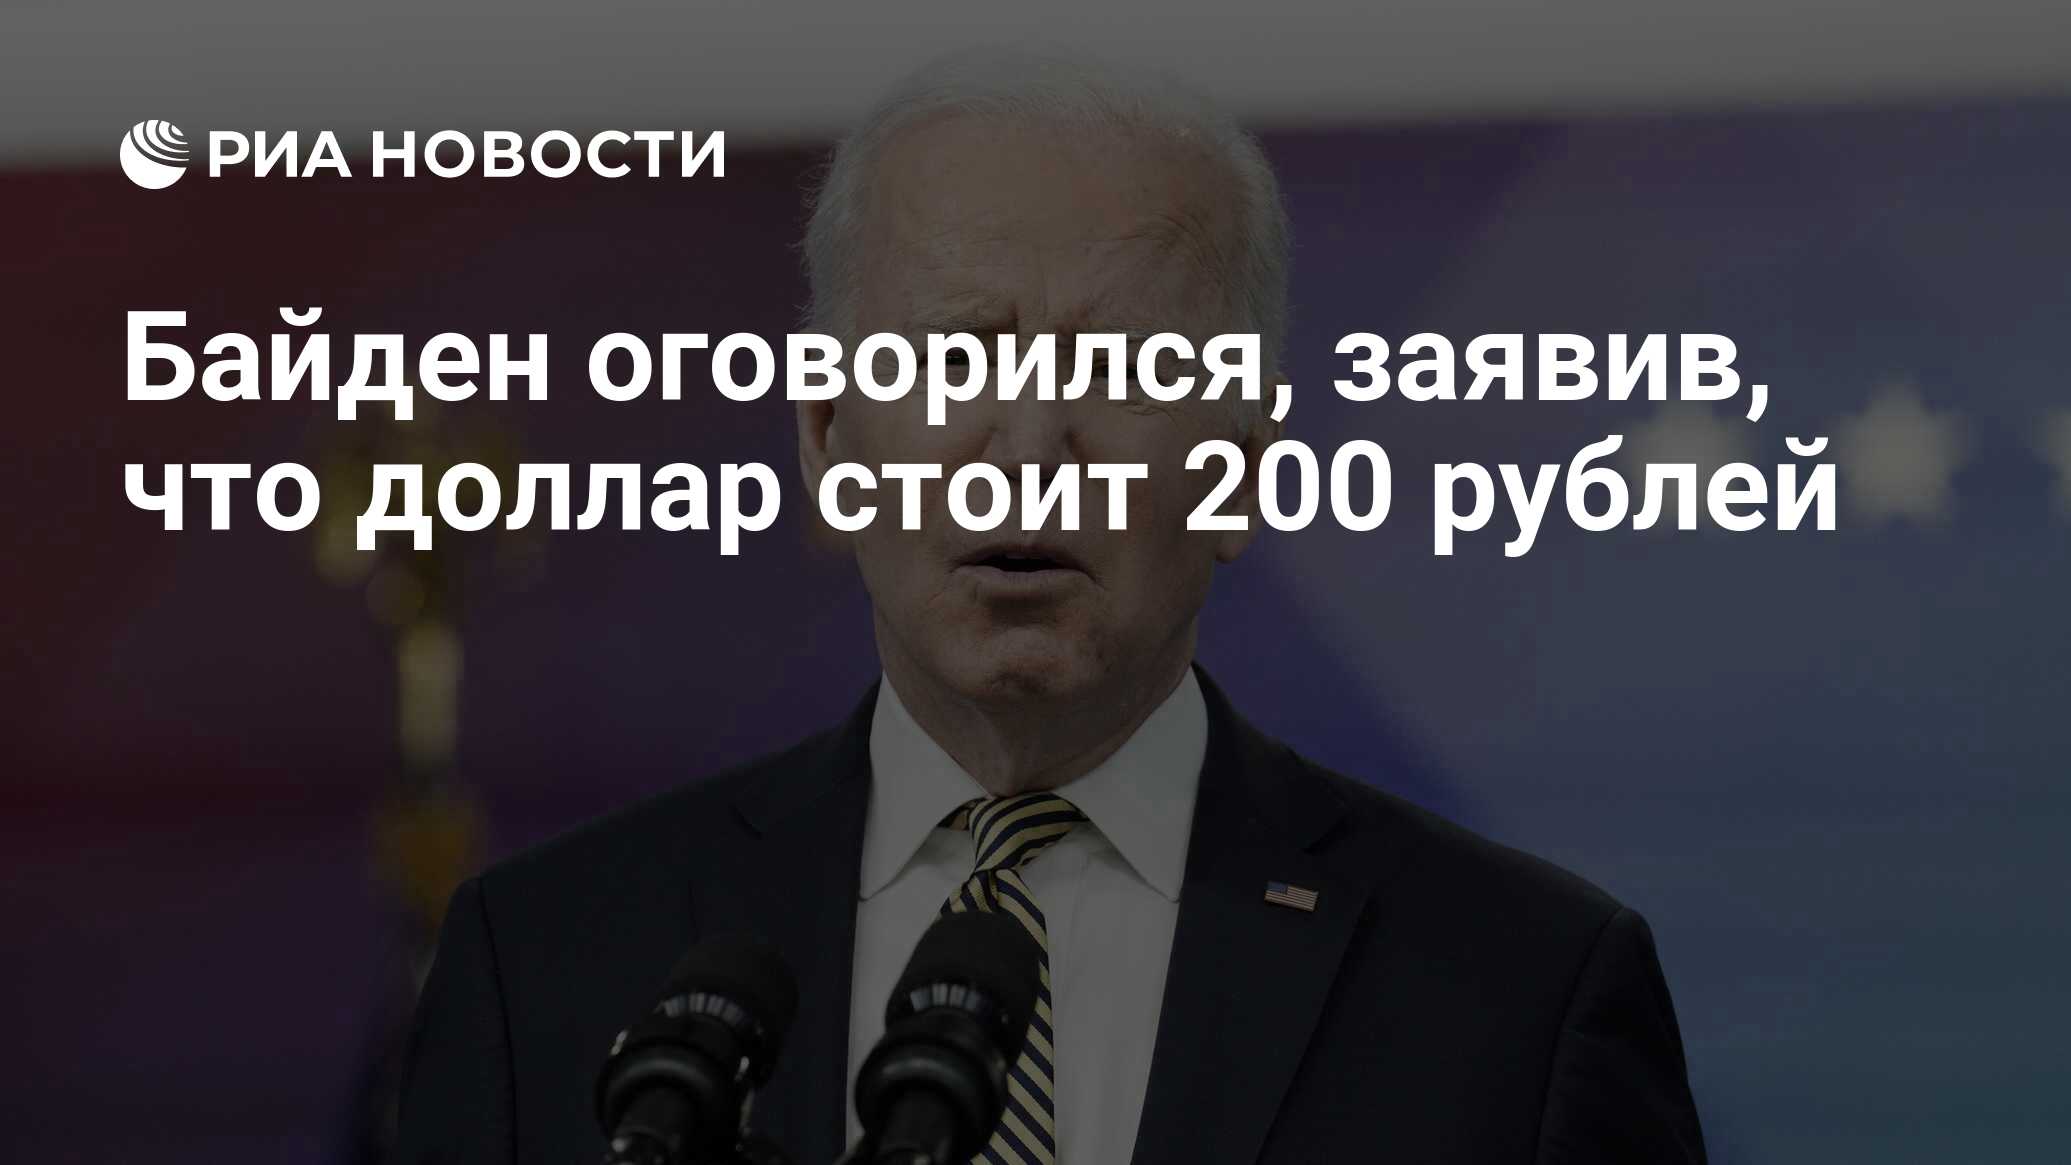 Байден оговорился, заявив, что доллар стоит 200 рублей